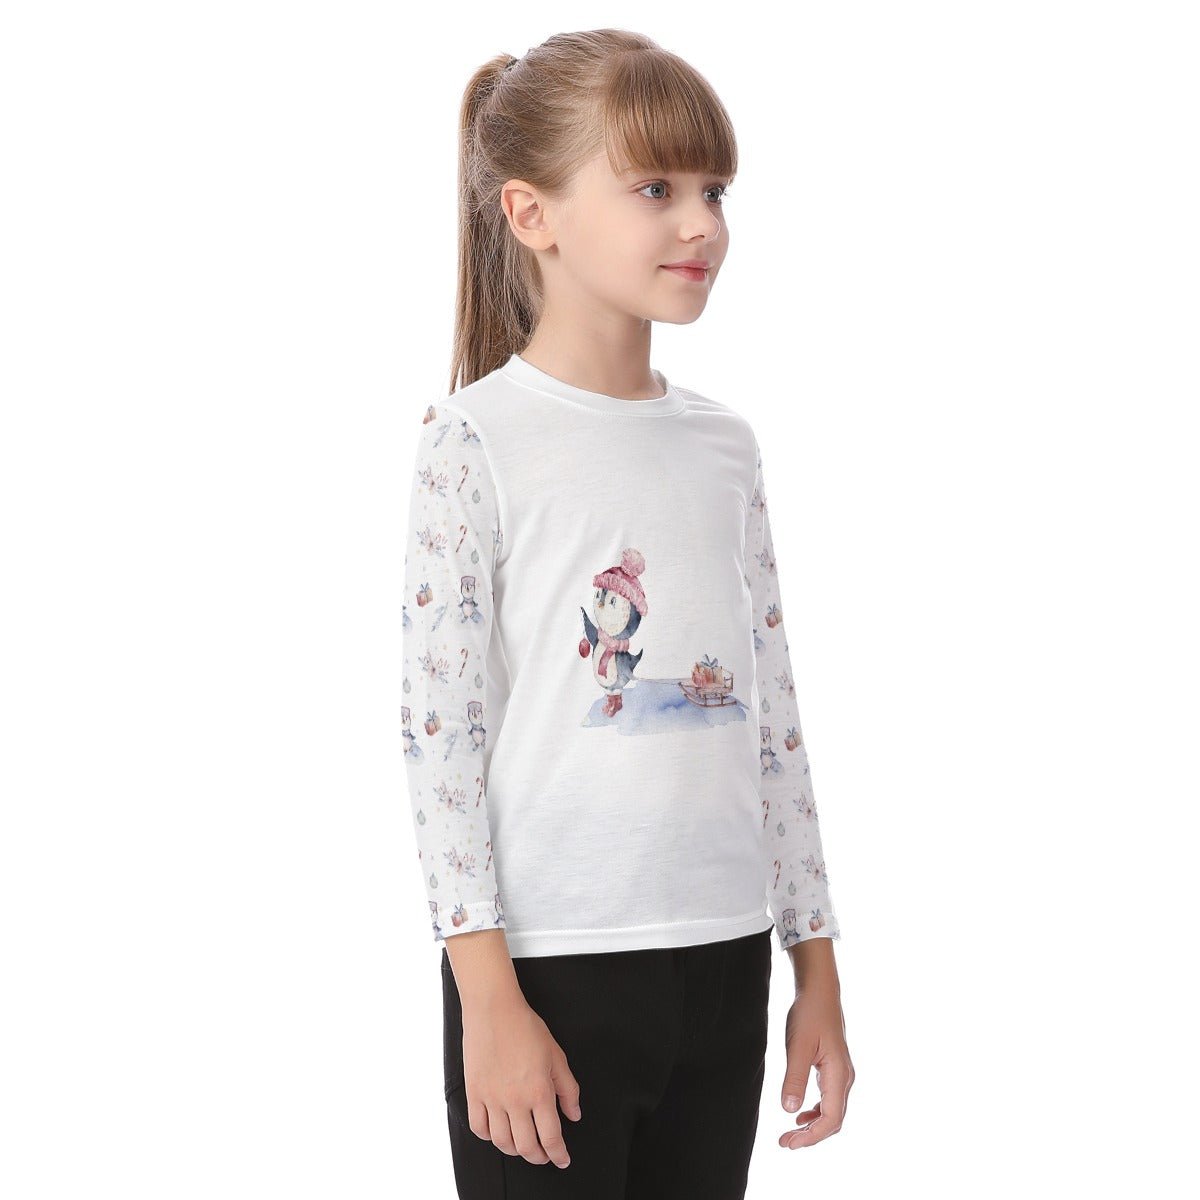 Kid's Long Sleeve Christmas T-shirt - Skating Penguin - Festive Style